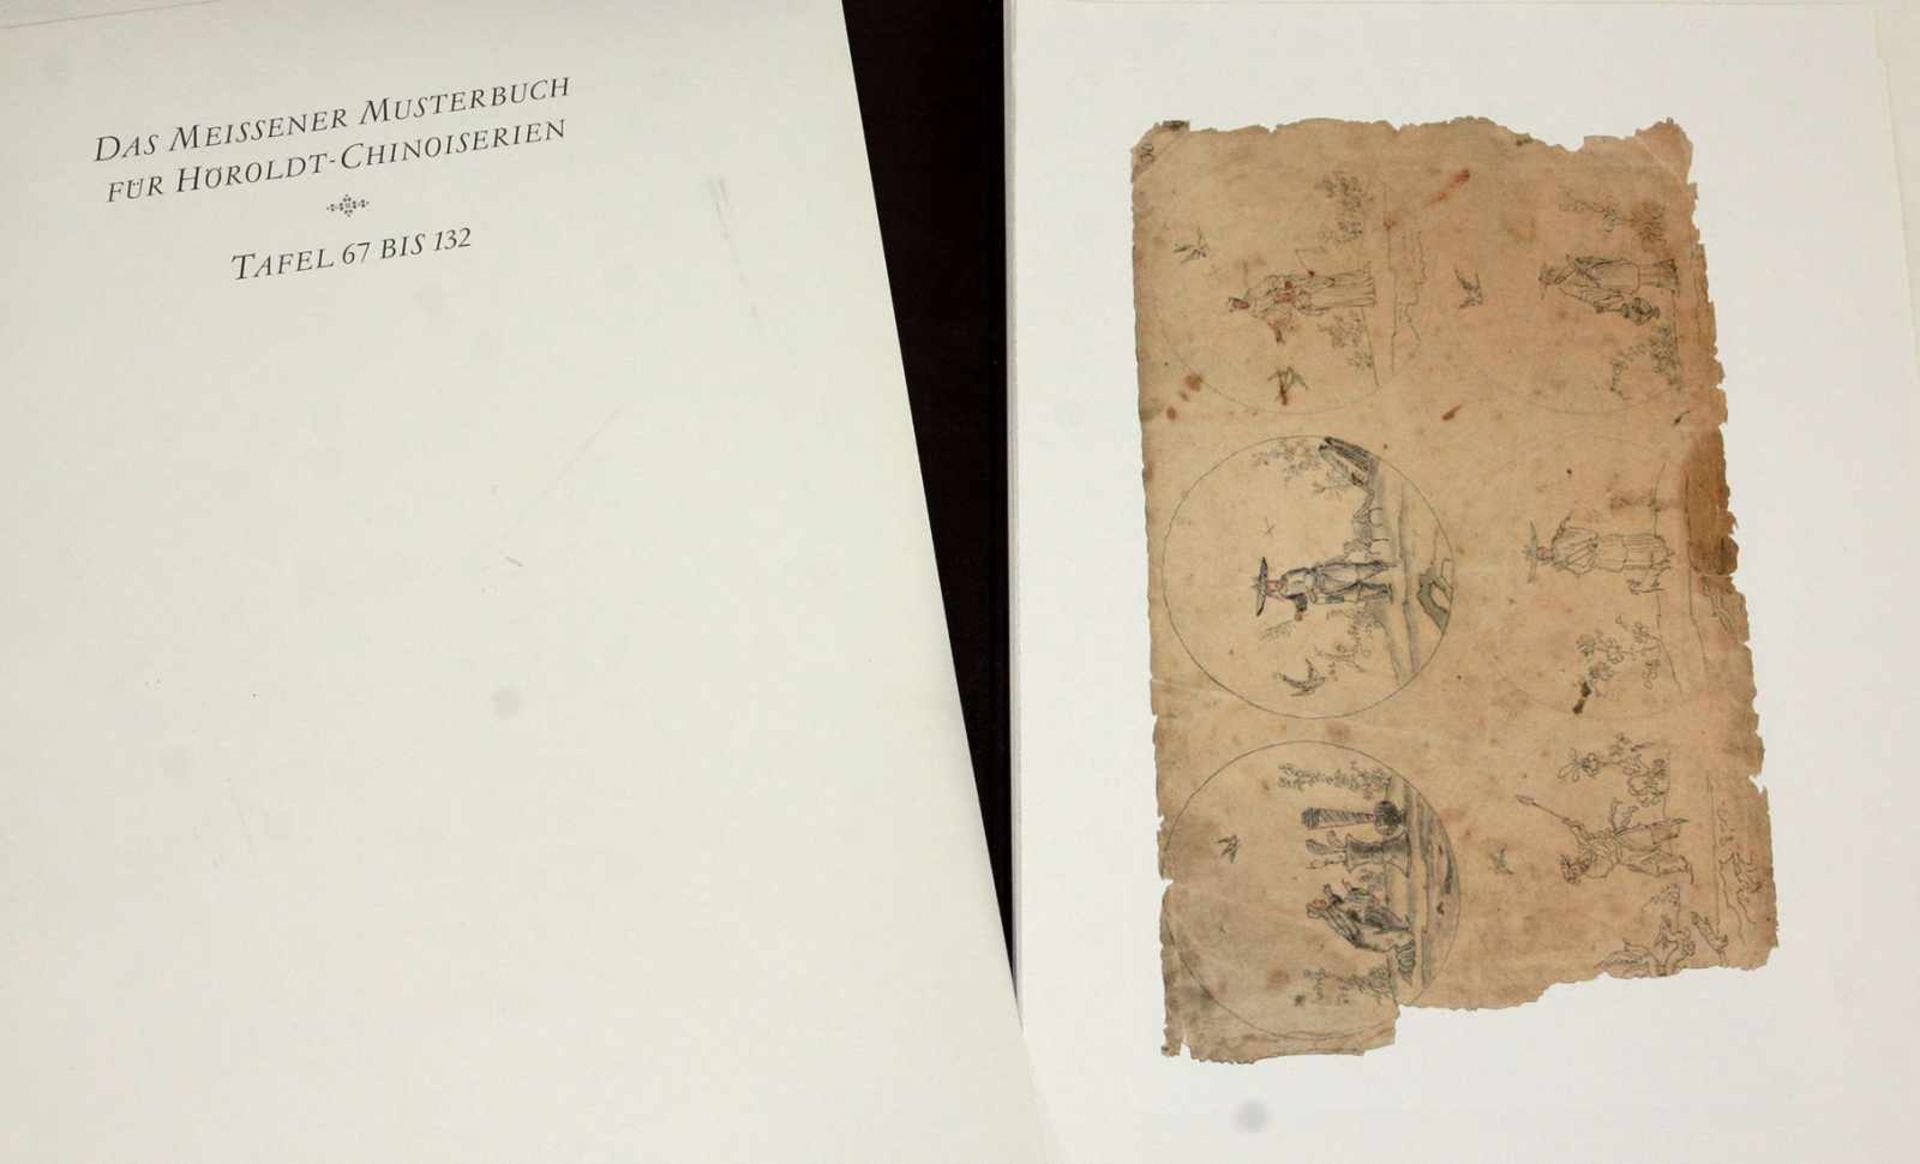 Das Meissener Musterbuchfür Höroldt Chinoiserien, 2 großformatige dunkelbraune Leinenmappen ca. 36 x - Bild 3 aus 3